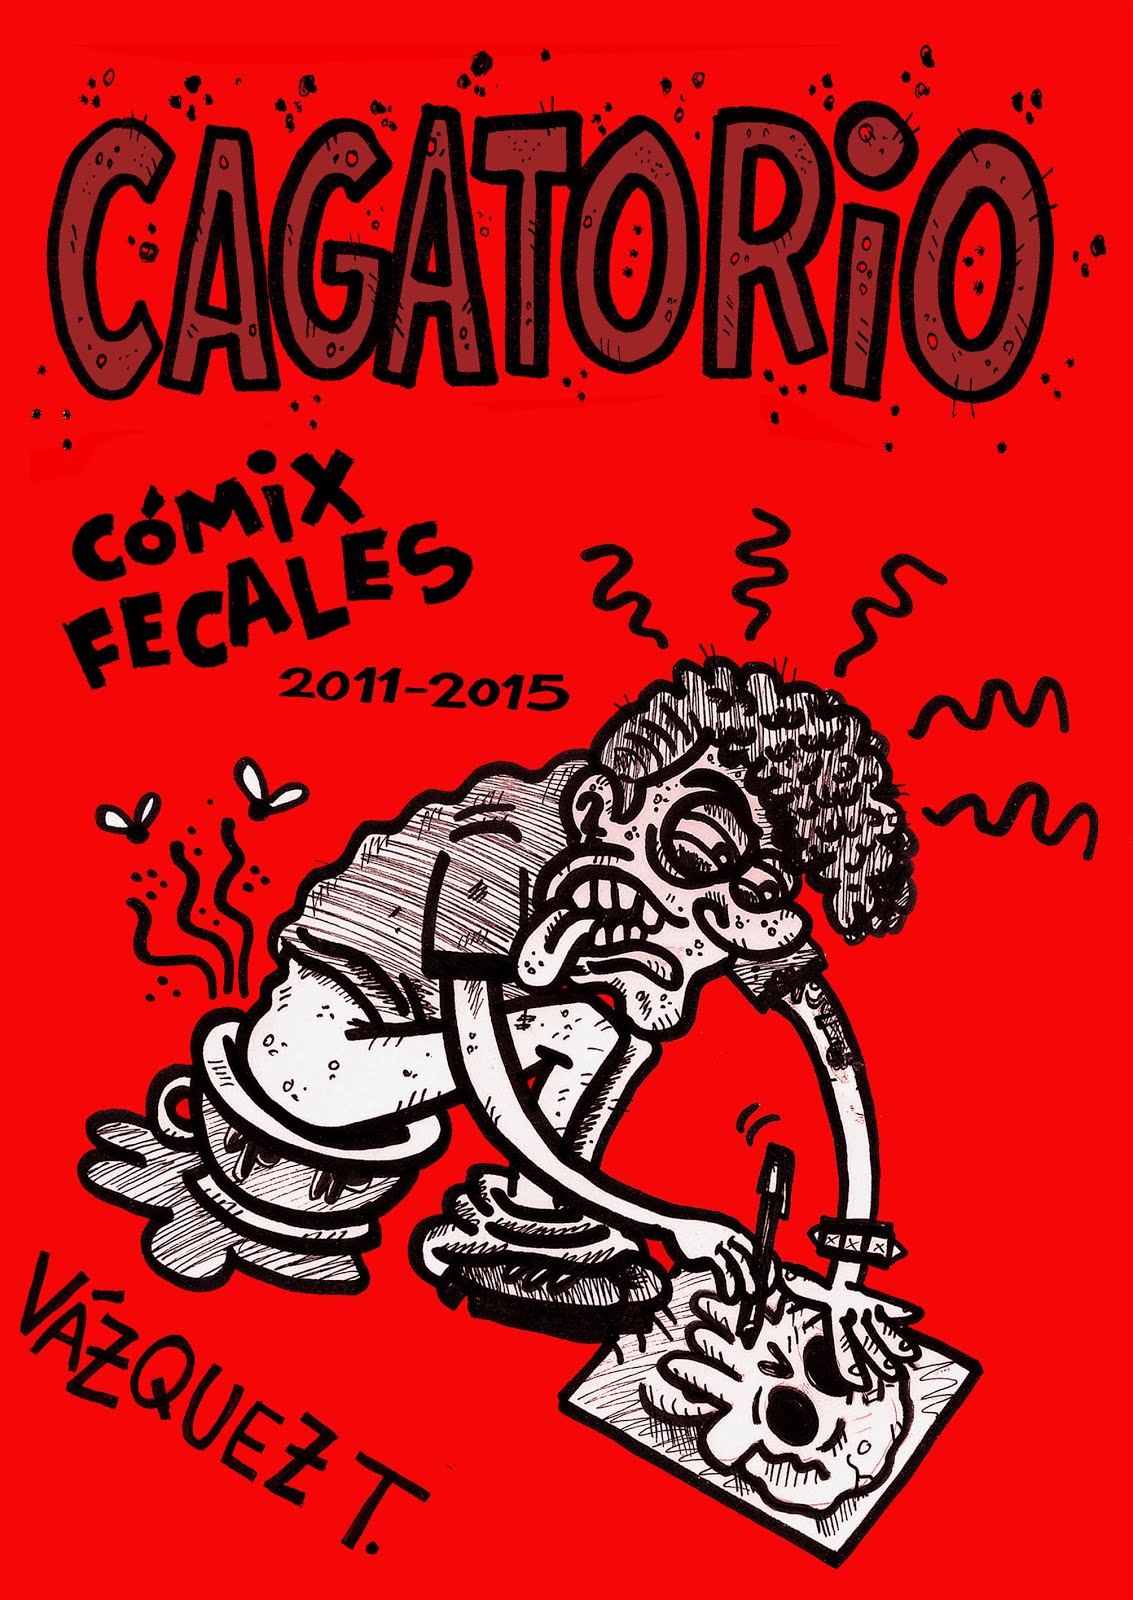 CAGATORIO. 2015